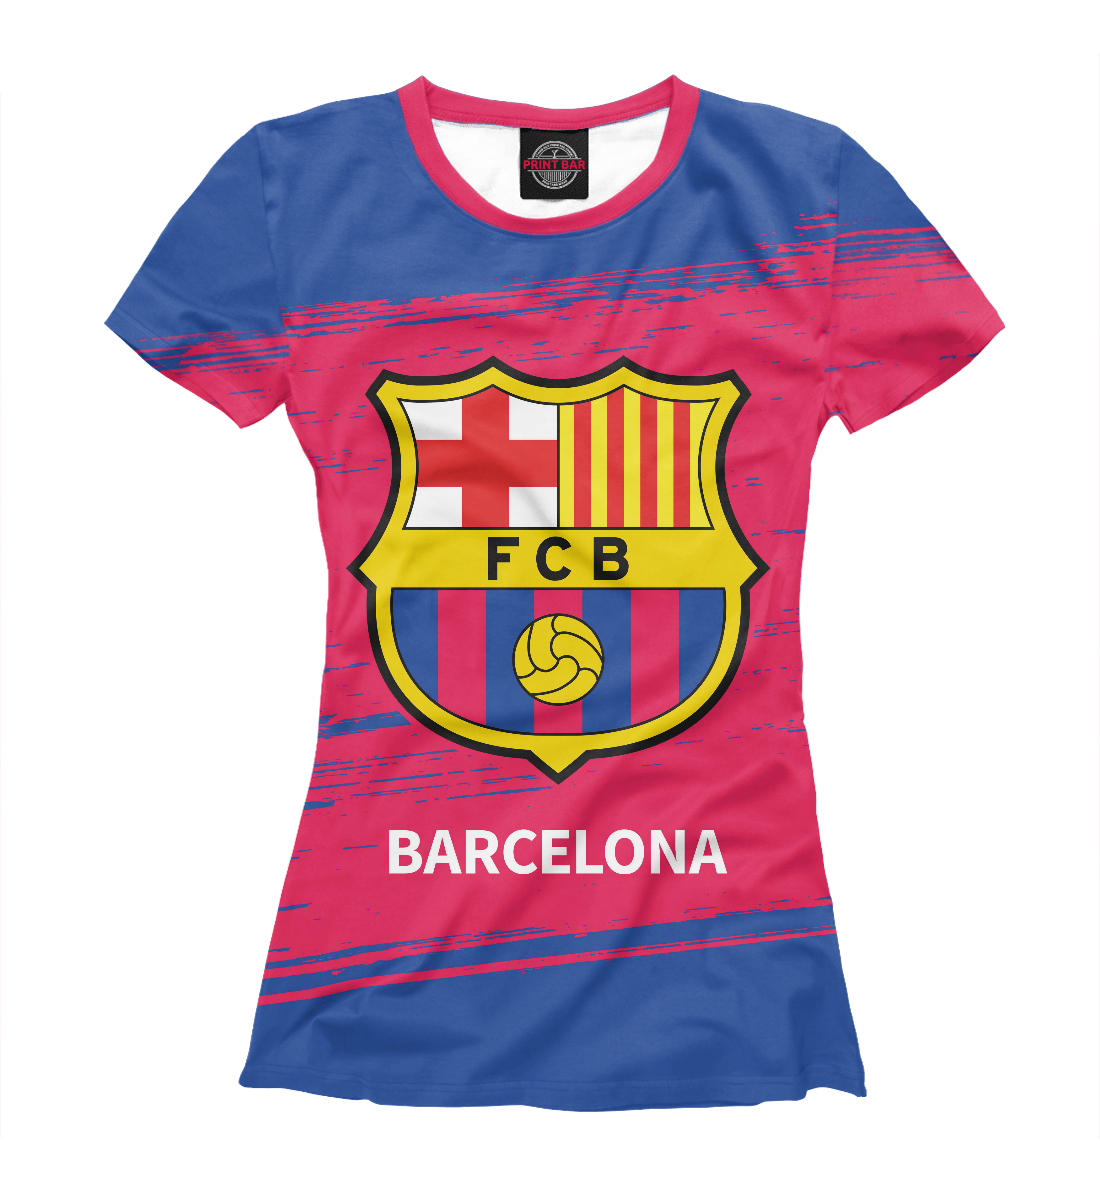 Детская Футболка Barcelona / Барселона для девочек, артикул BAR-635352-fut-1mp